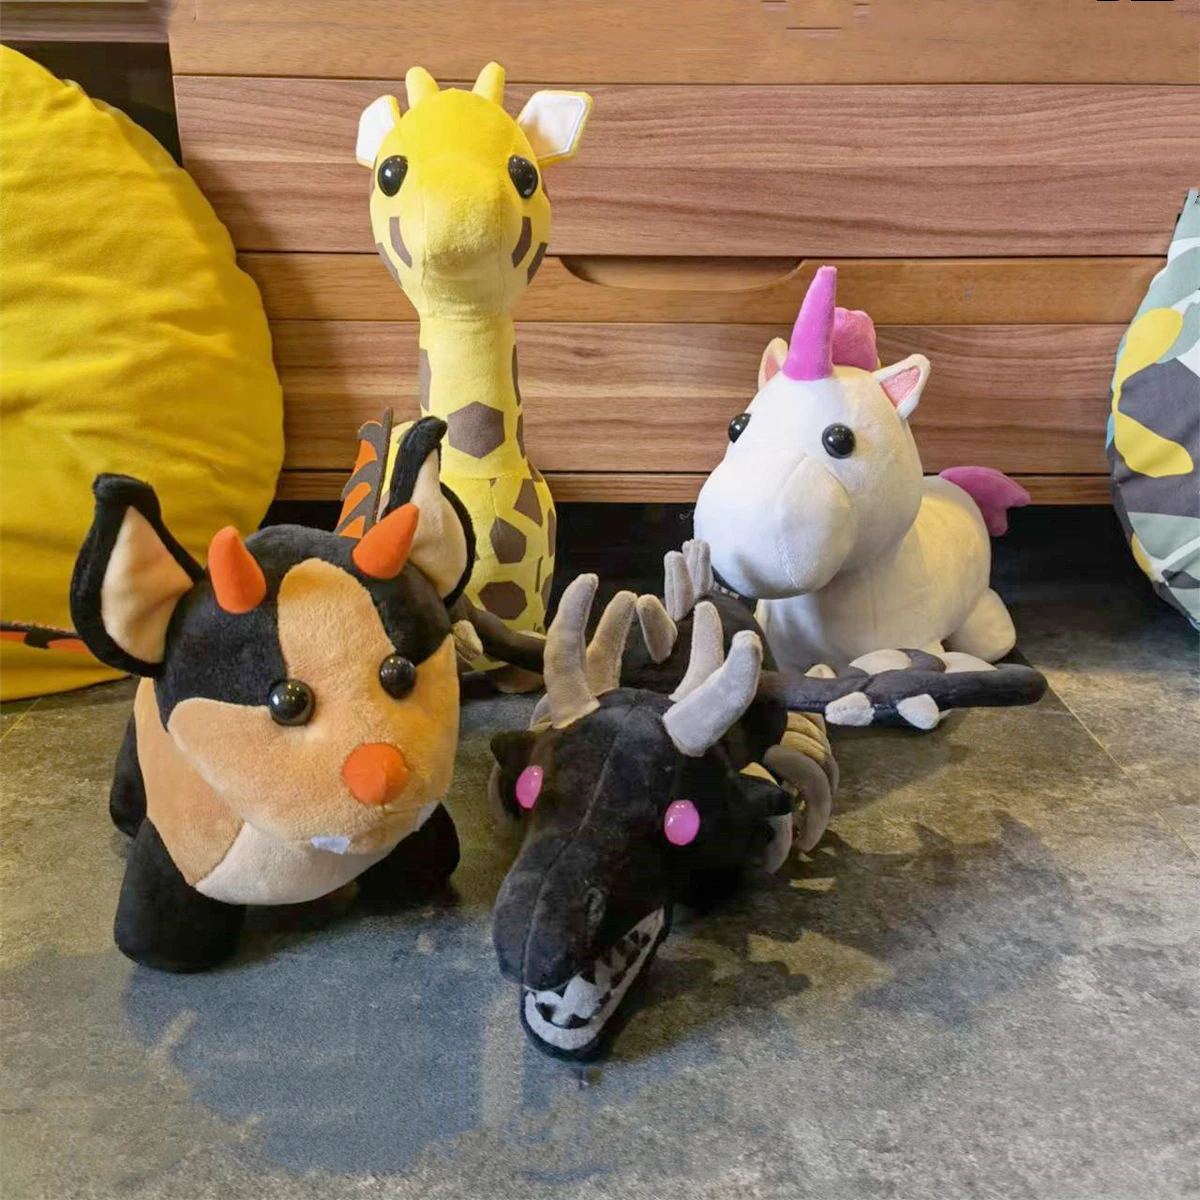 Adopt Me Pets Bat Dragon Plush Stuffed Plushie Toy Doll Kids Toys Gift  Animal